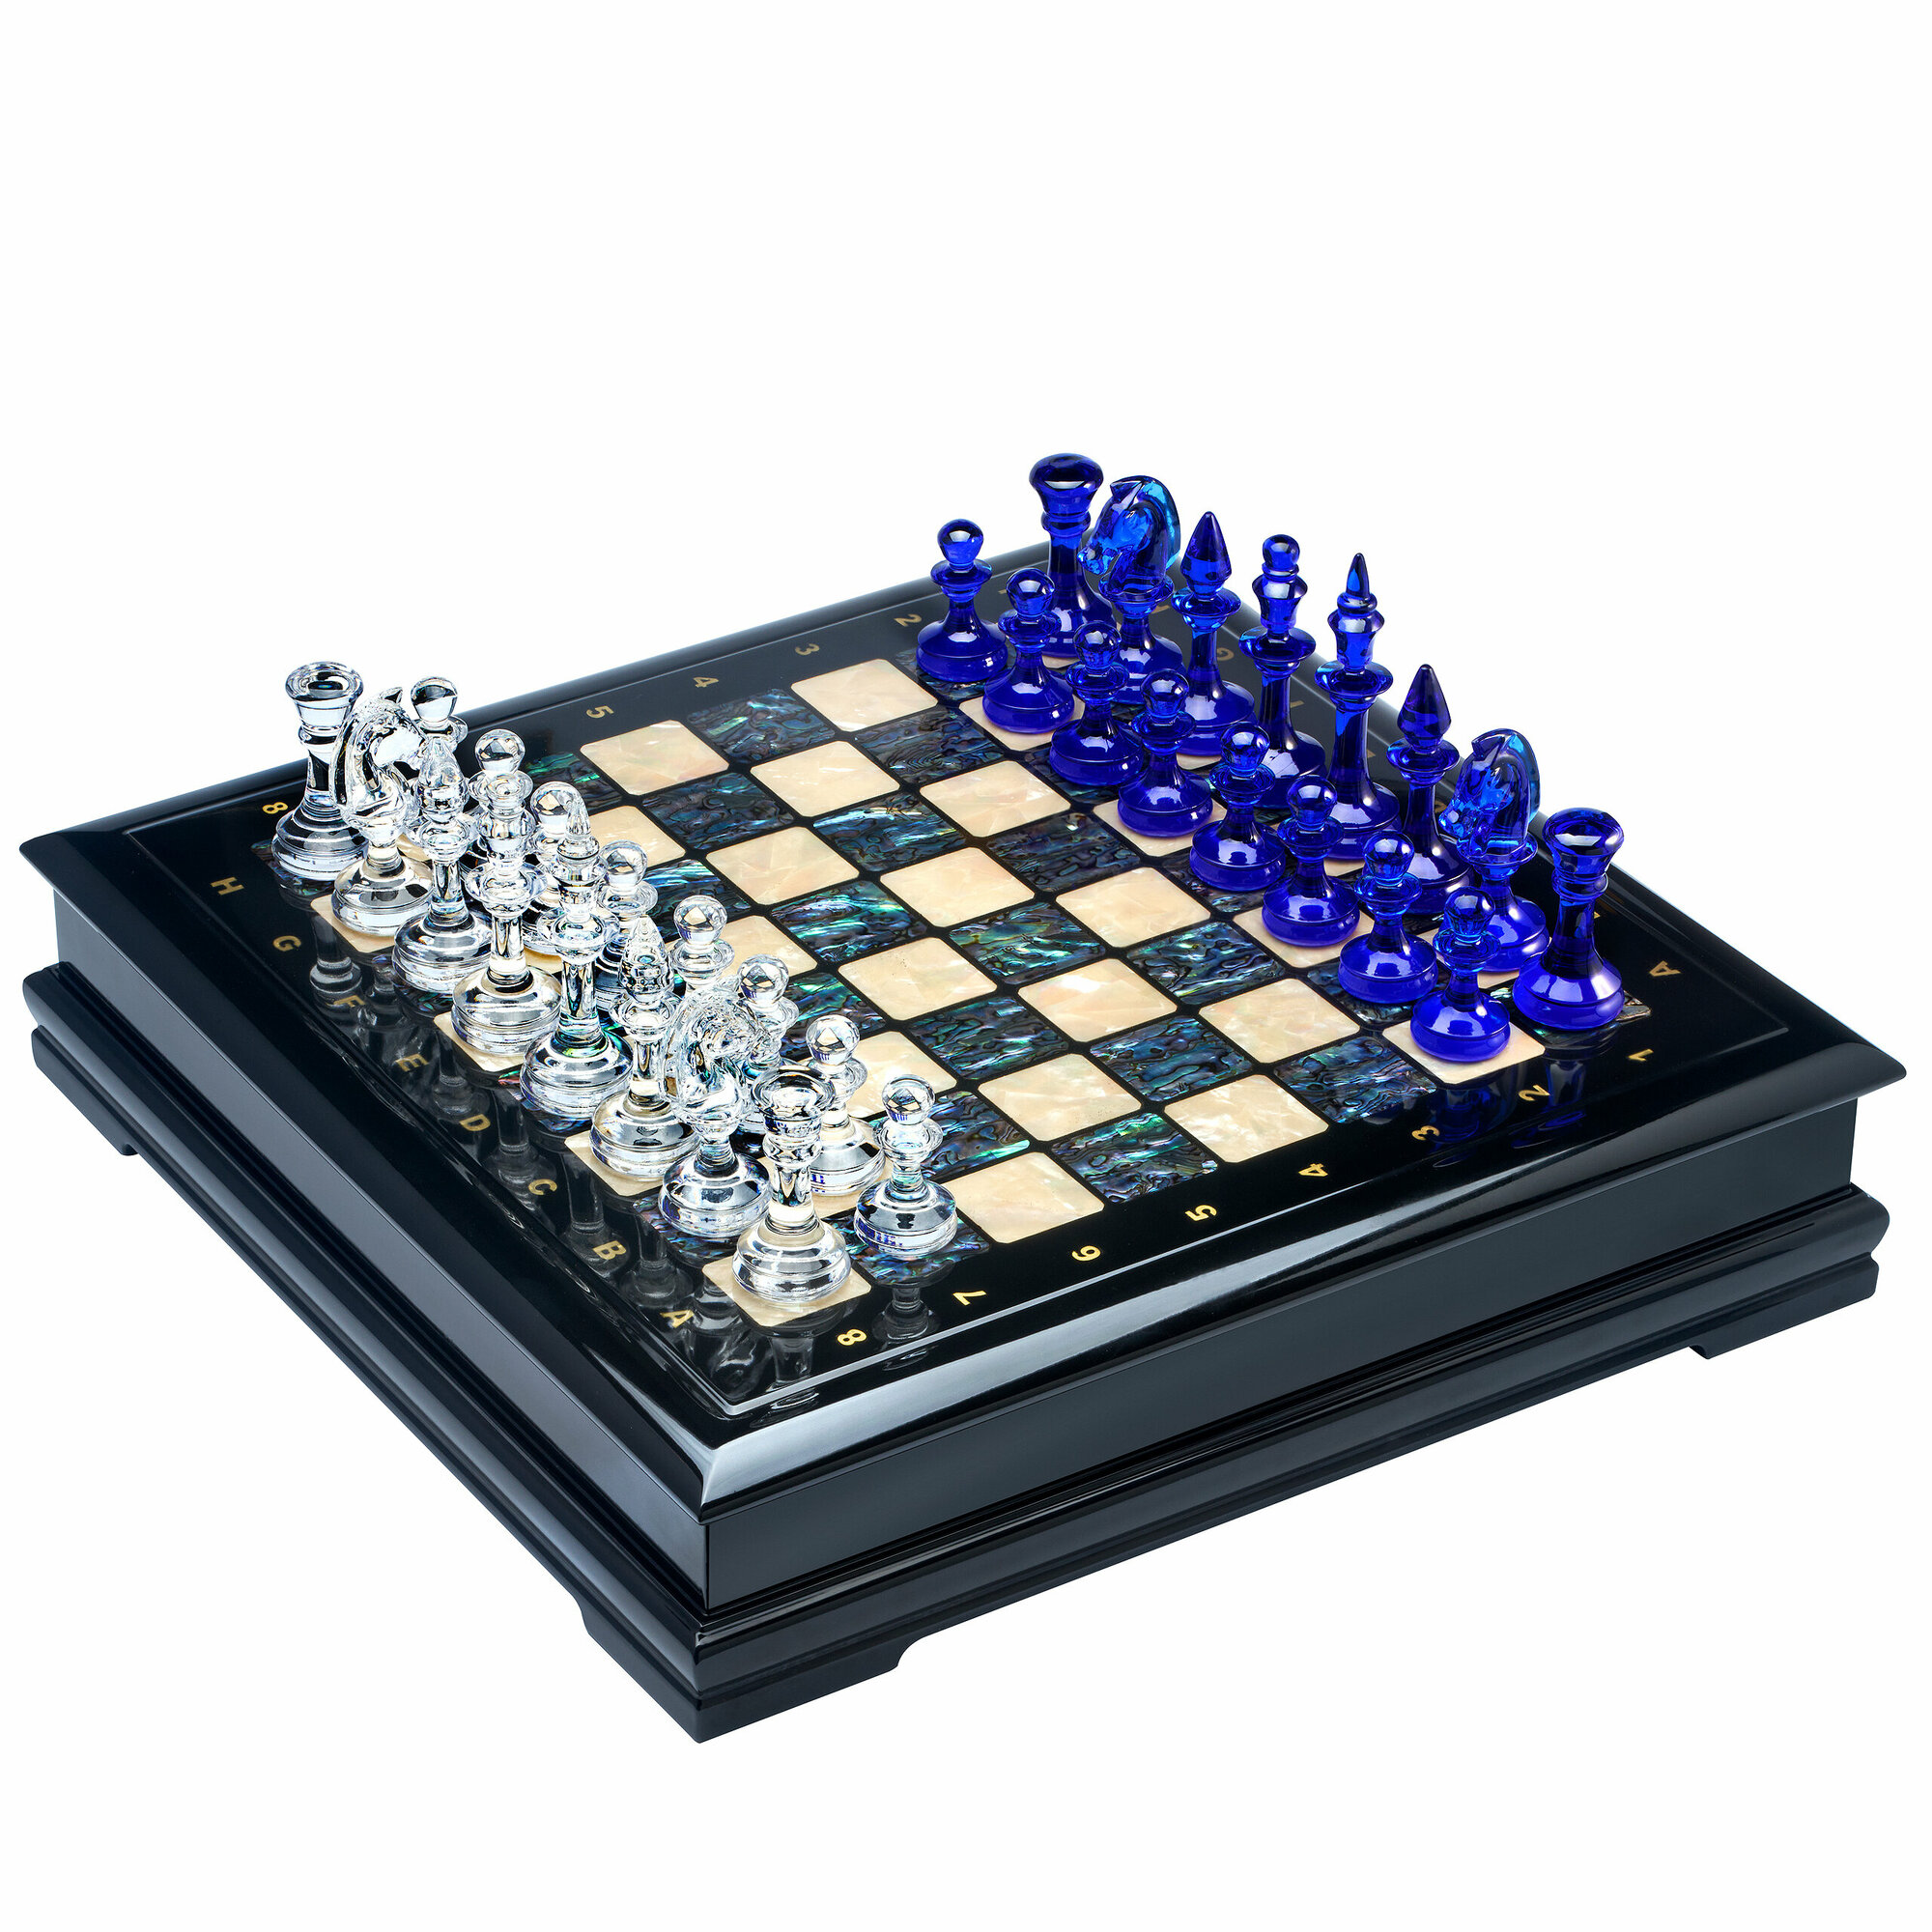 Шахматный ларец с натуральным перламутром и фигурами из цветного хрусталя (отделка бежевой тканью) 45х45 см